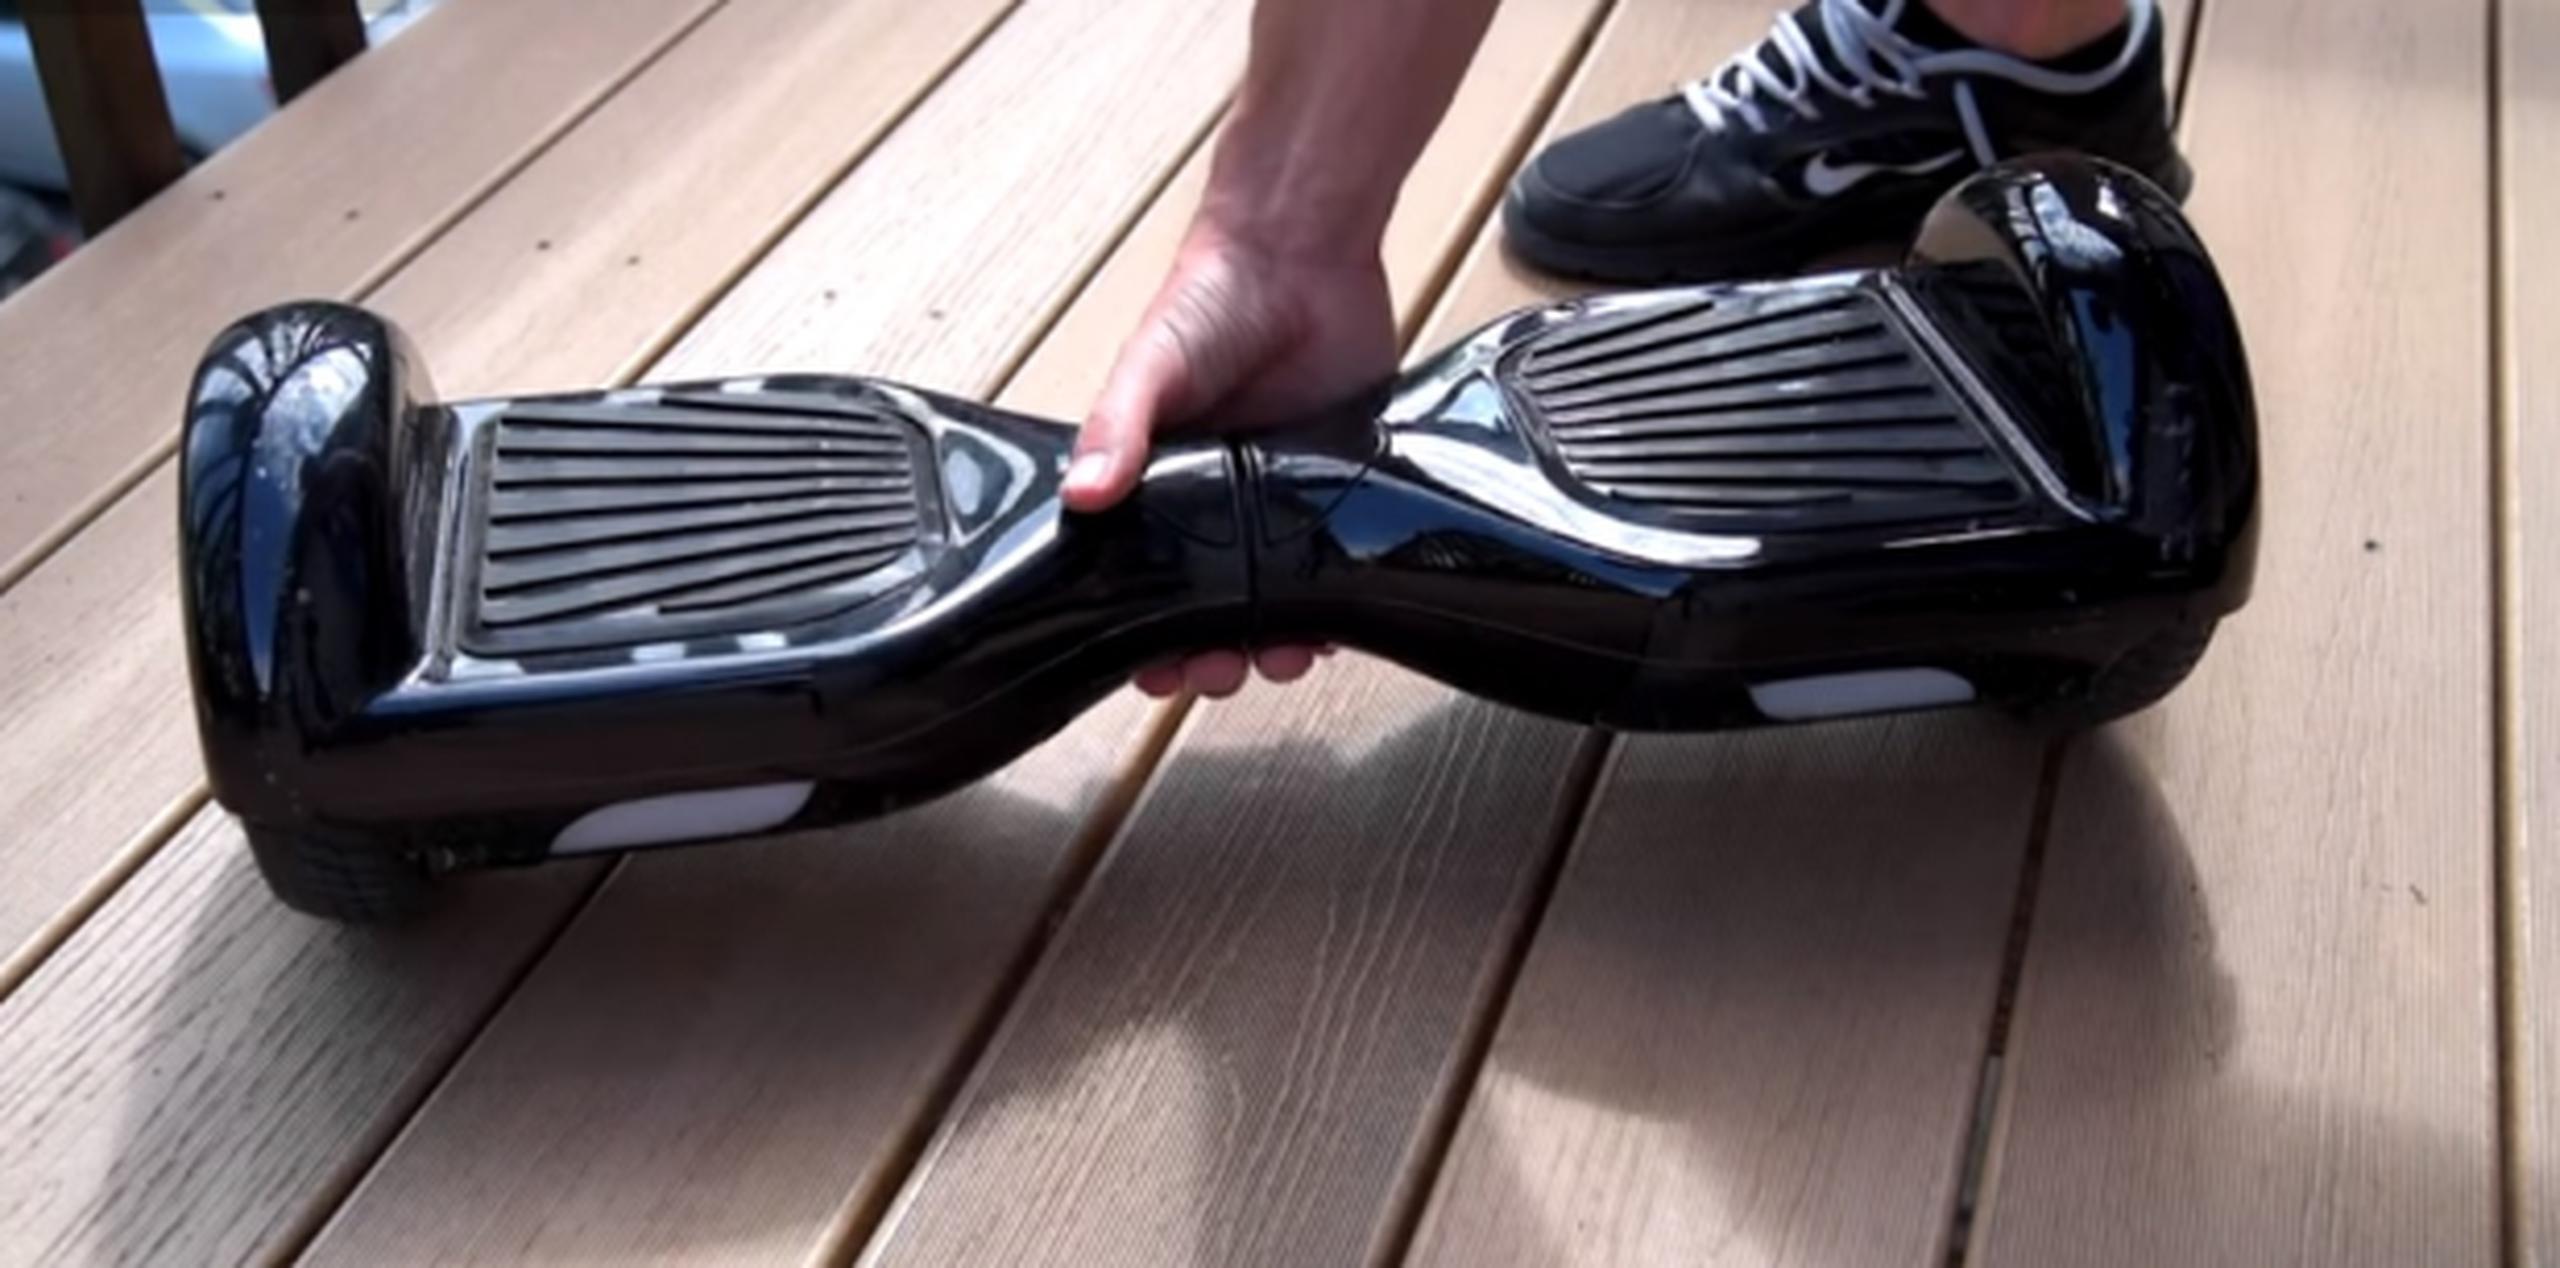 Los hoverboards se han puesto tan de moda que conseguir uno ya es una hazaña. (YouTube)